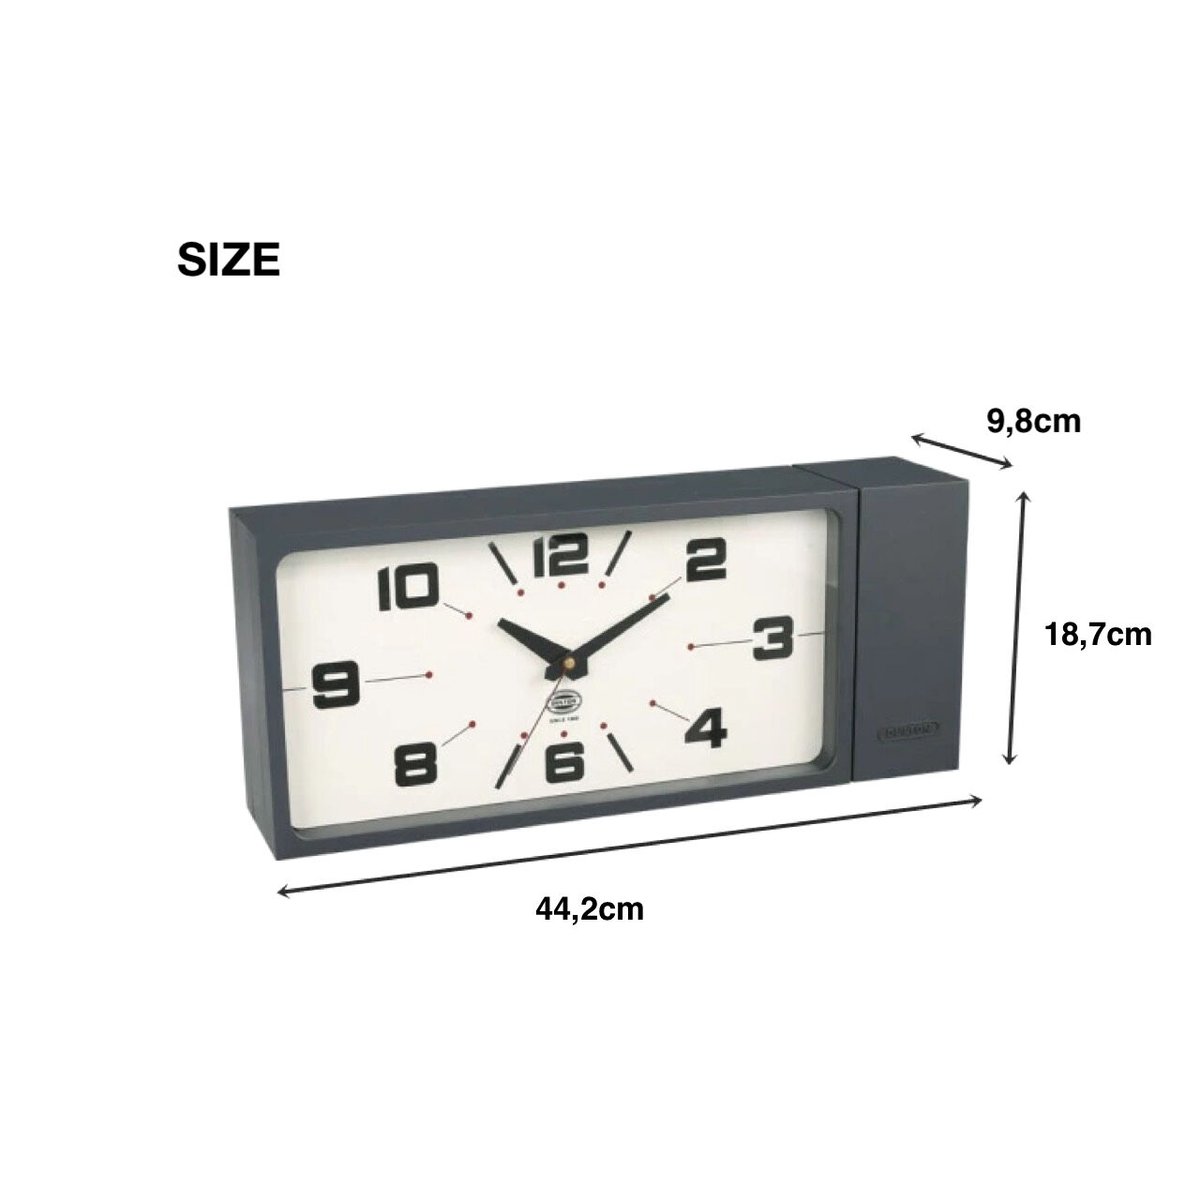 存在感を併せ持つスタイリッシュな両面時計 / DOUBLE FACE CLOCK RECTANGLE ダブルフェイスクロック / DULTON /  サイズ W44,2×D9,8 H18,7cm